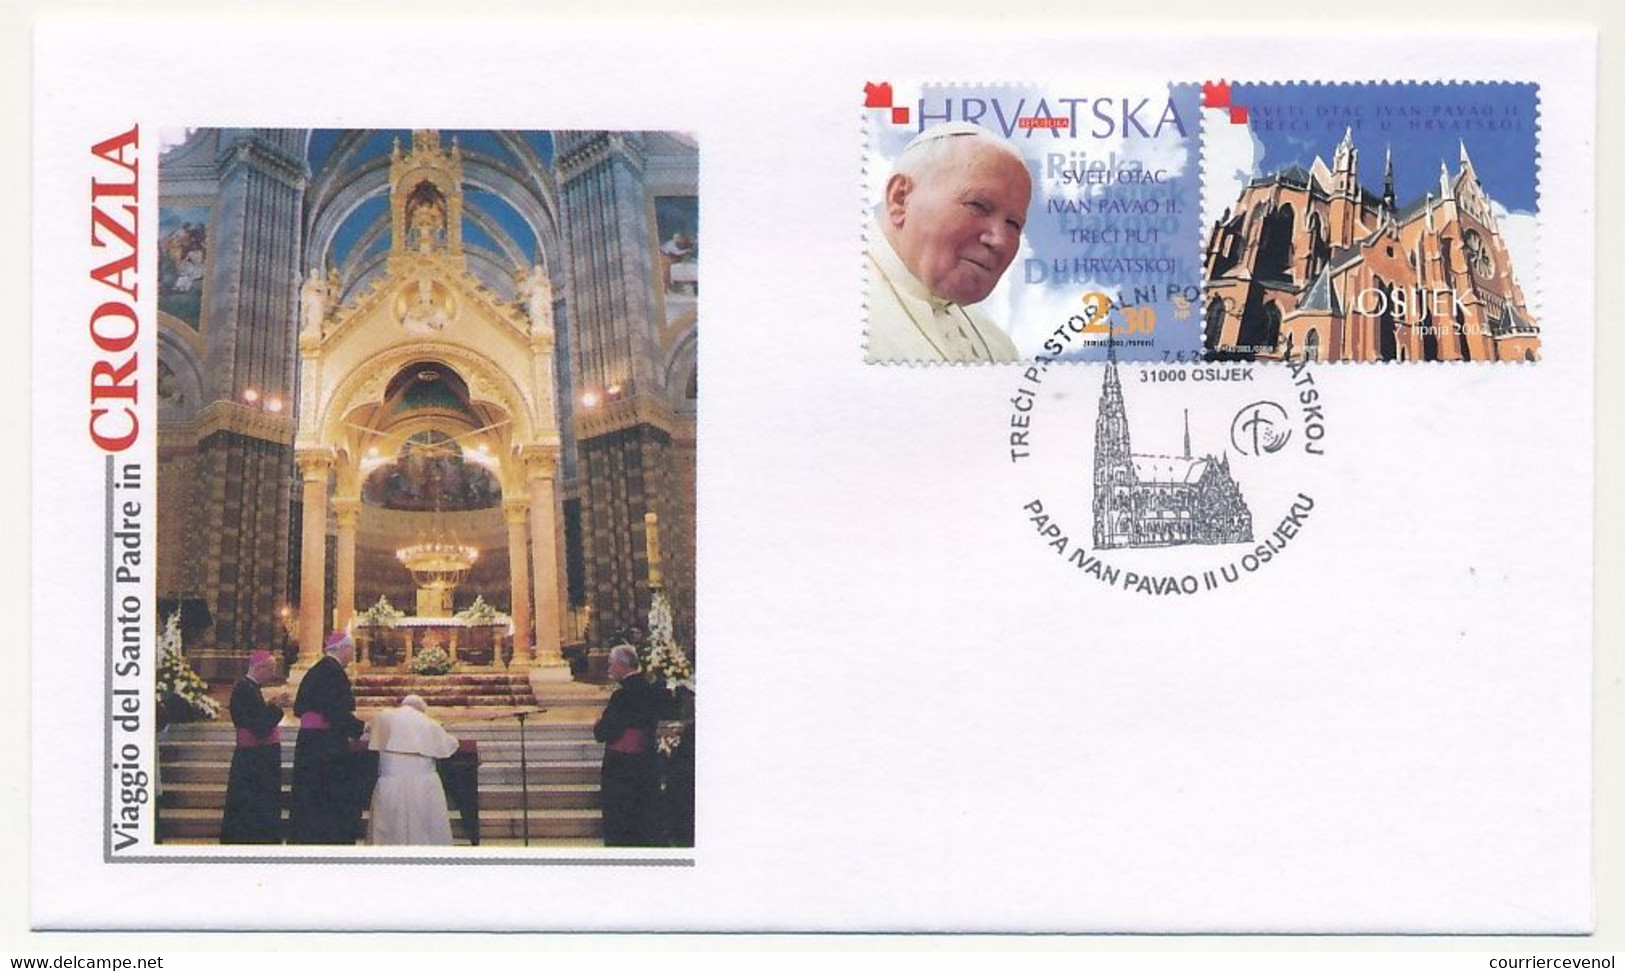 CROATIE - 12 enveloppes illustrées Pape Jean Paul II - Voyage en Croatie - 2003